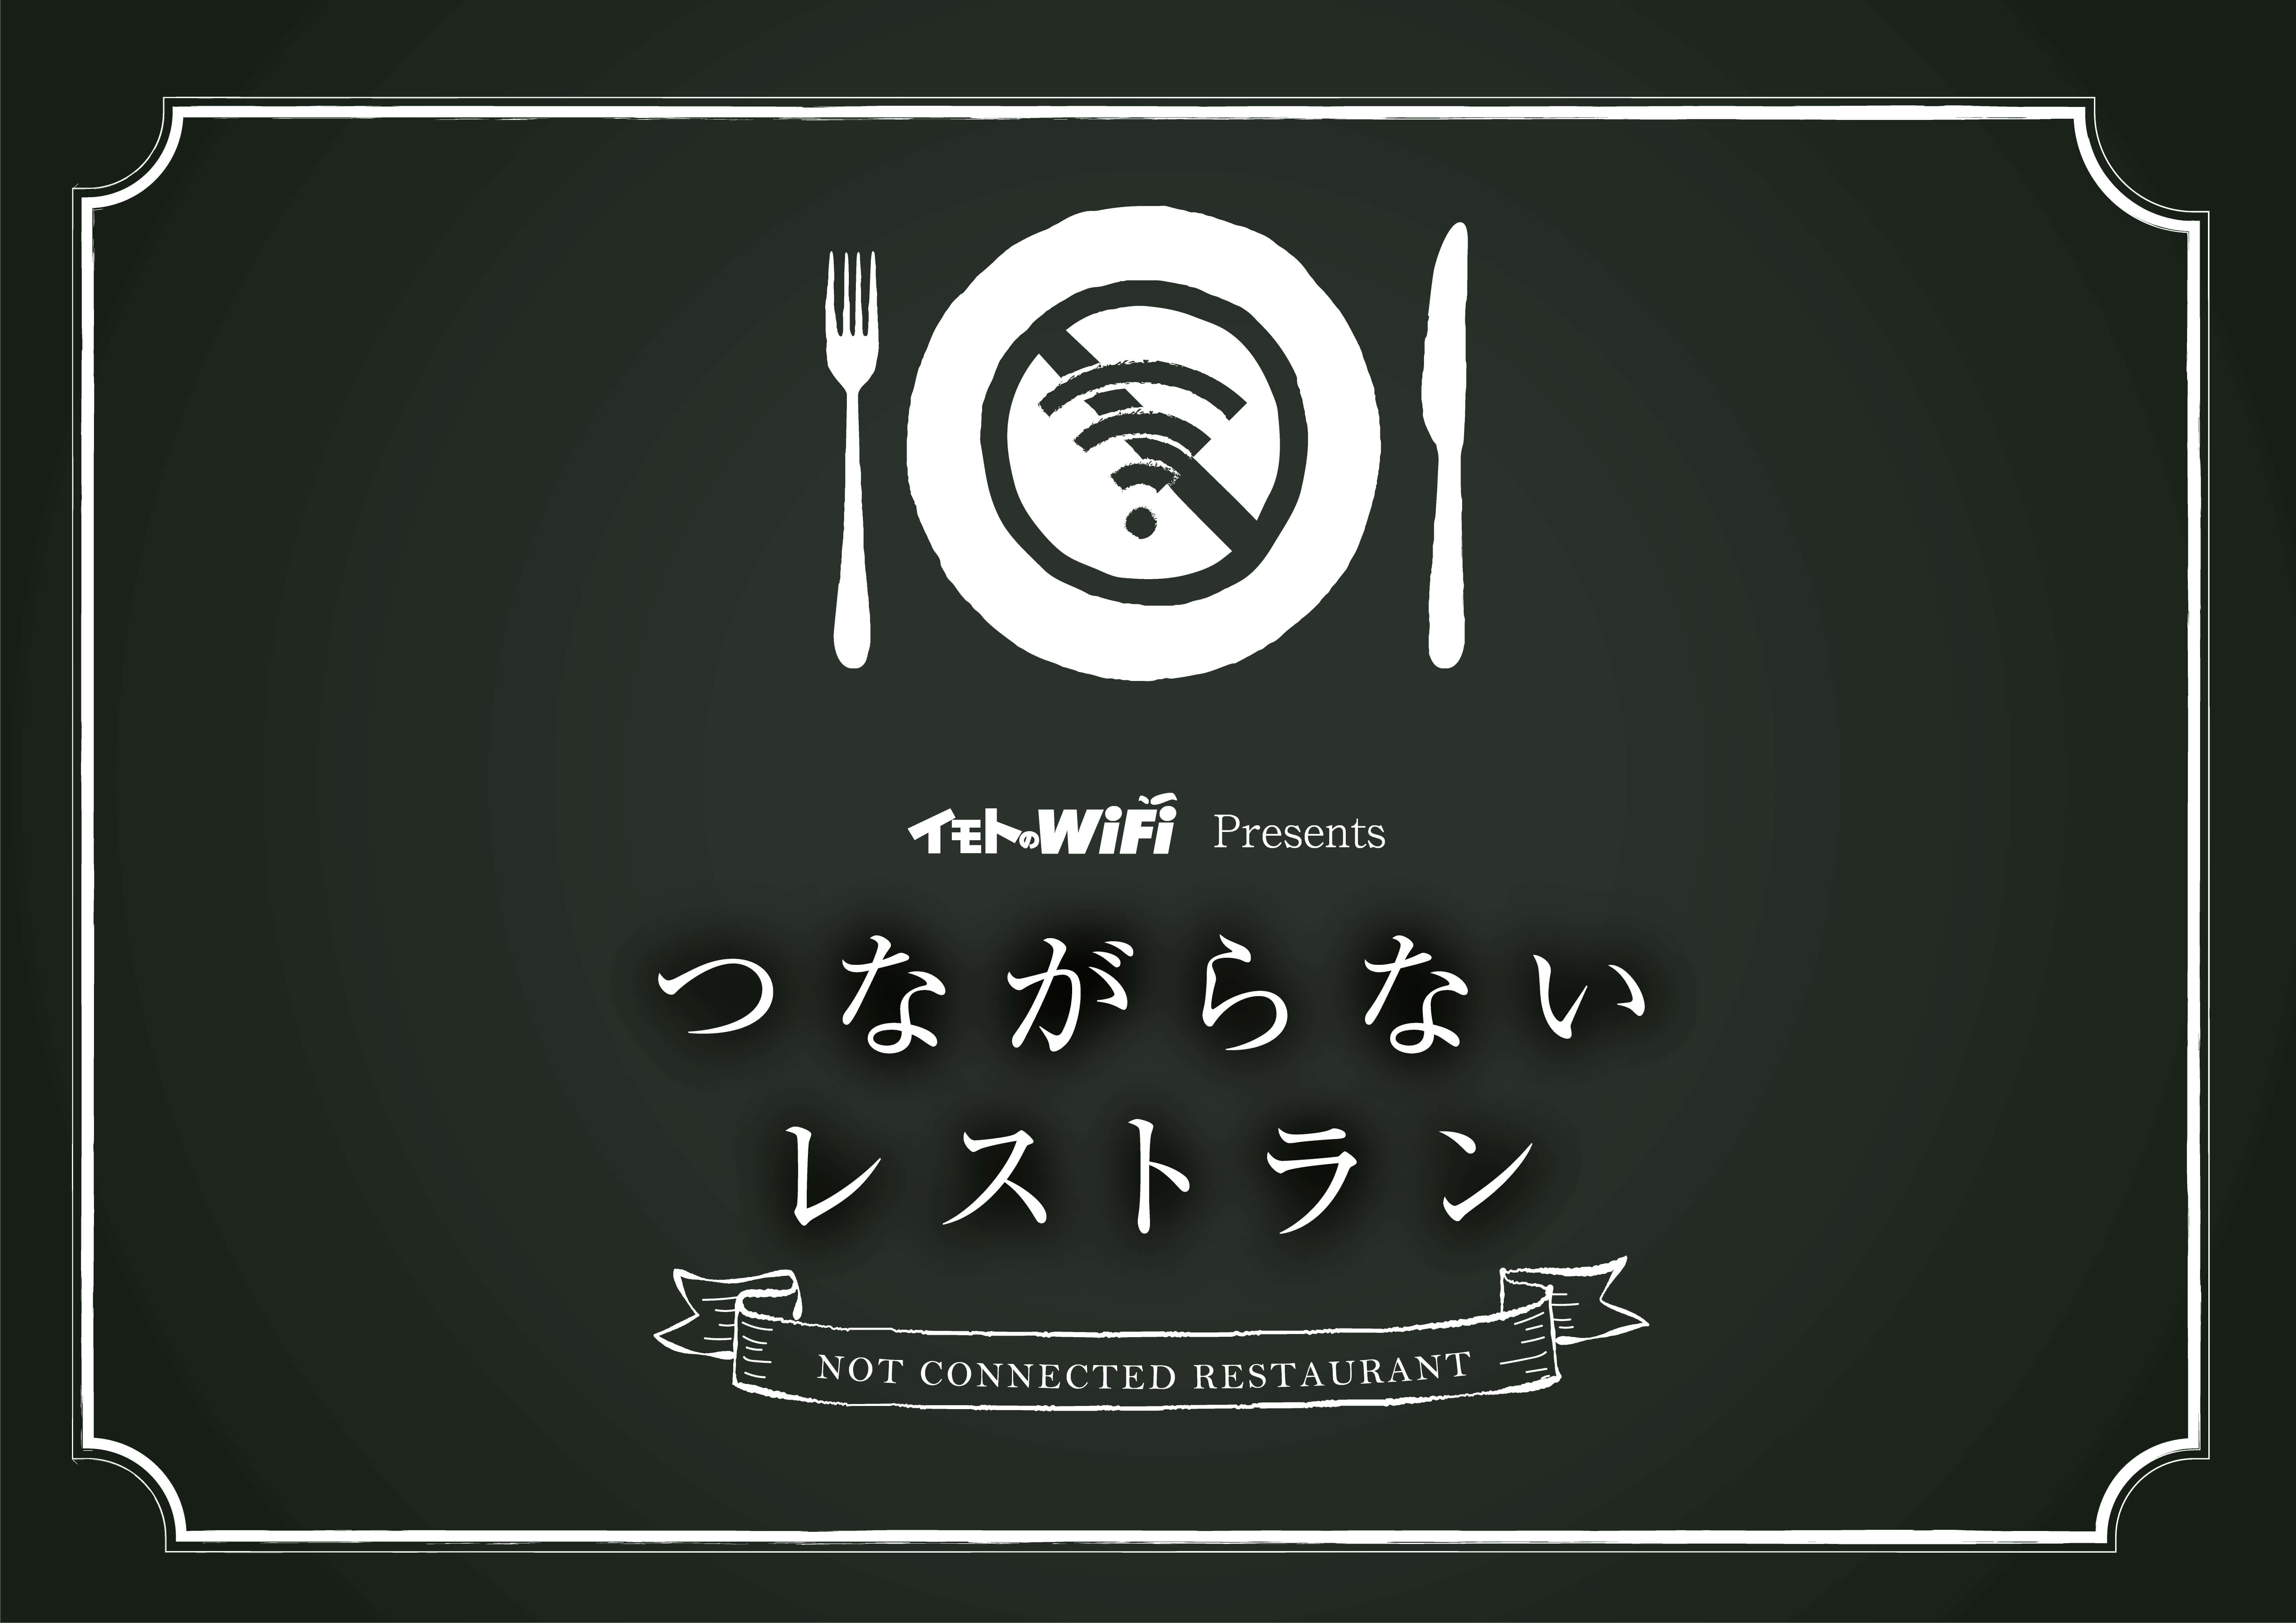 イモトのwifi Presents つながらないレストラン 期間限定で五反田にオープン エクスコムグローバル株式会社のプレスリリース